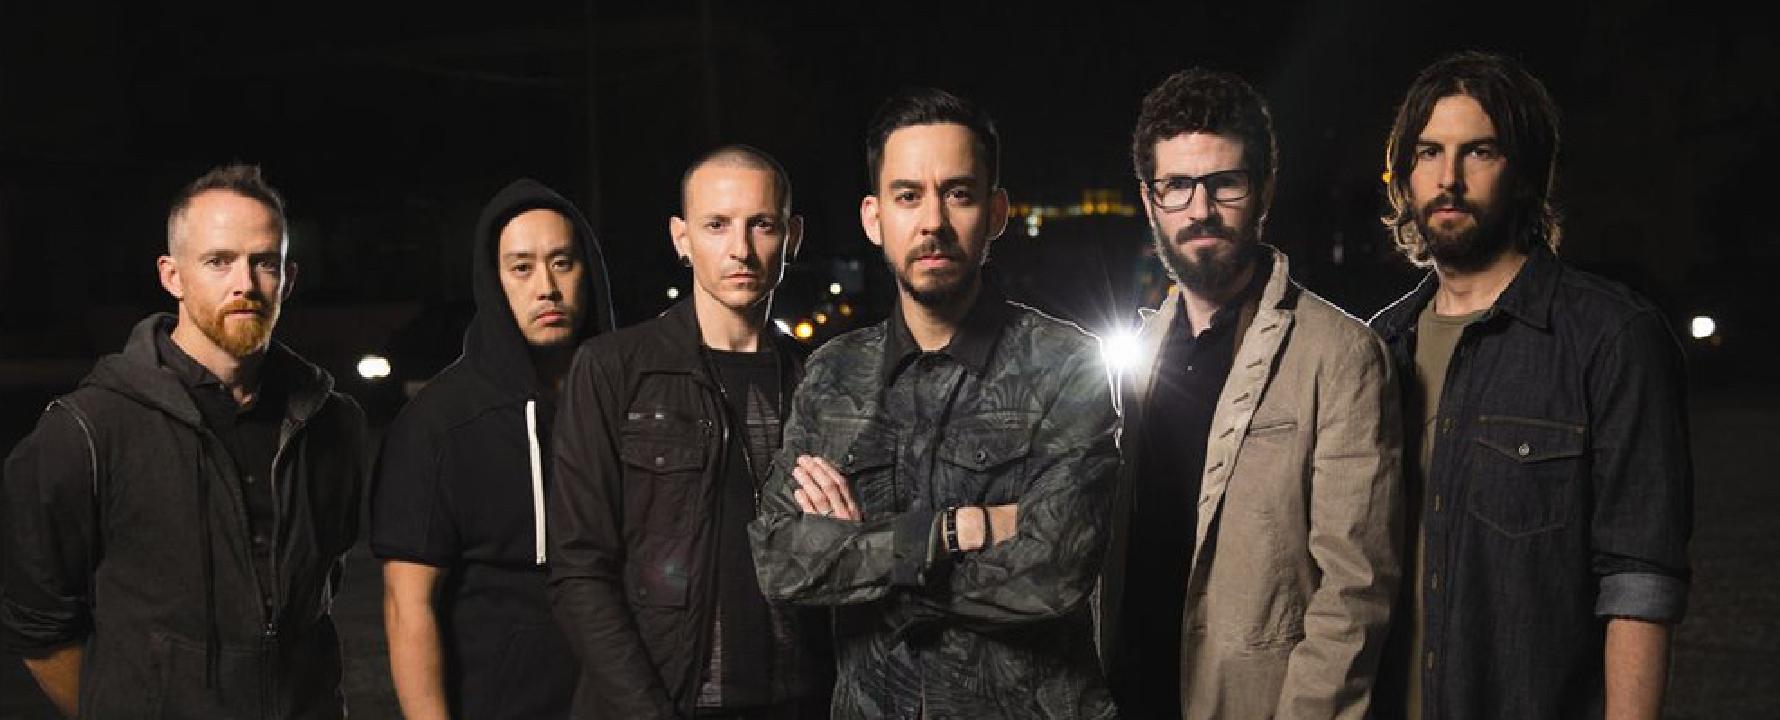 Promofoto von Linkin Park.